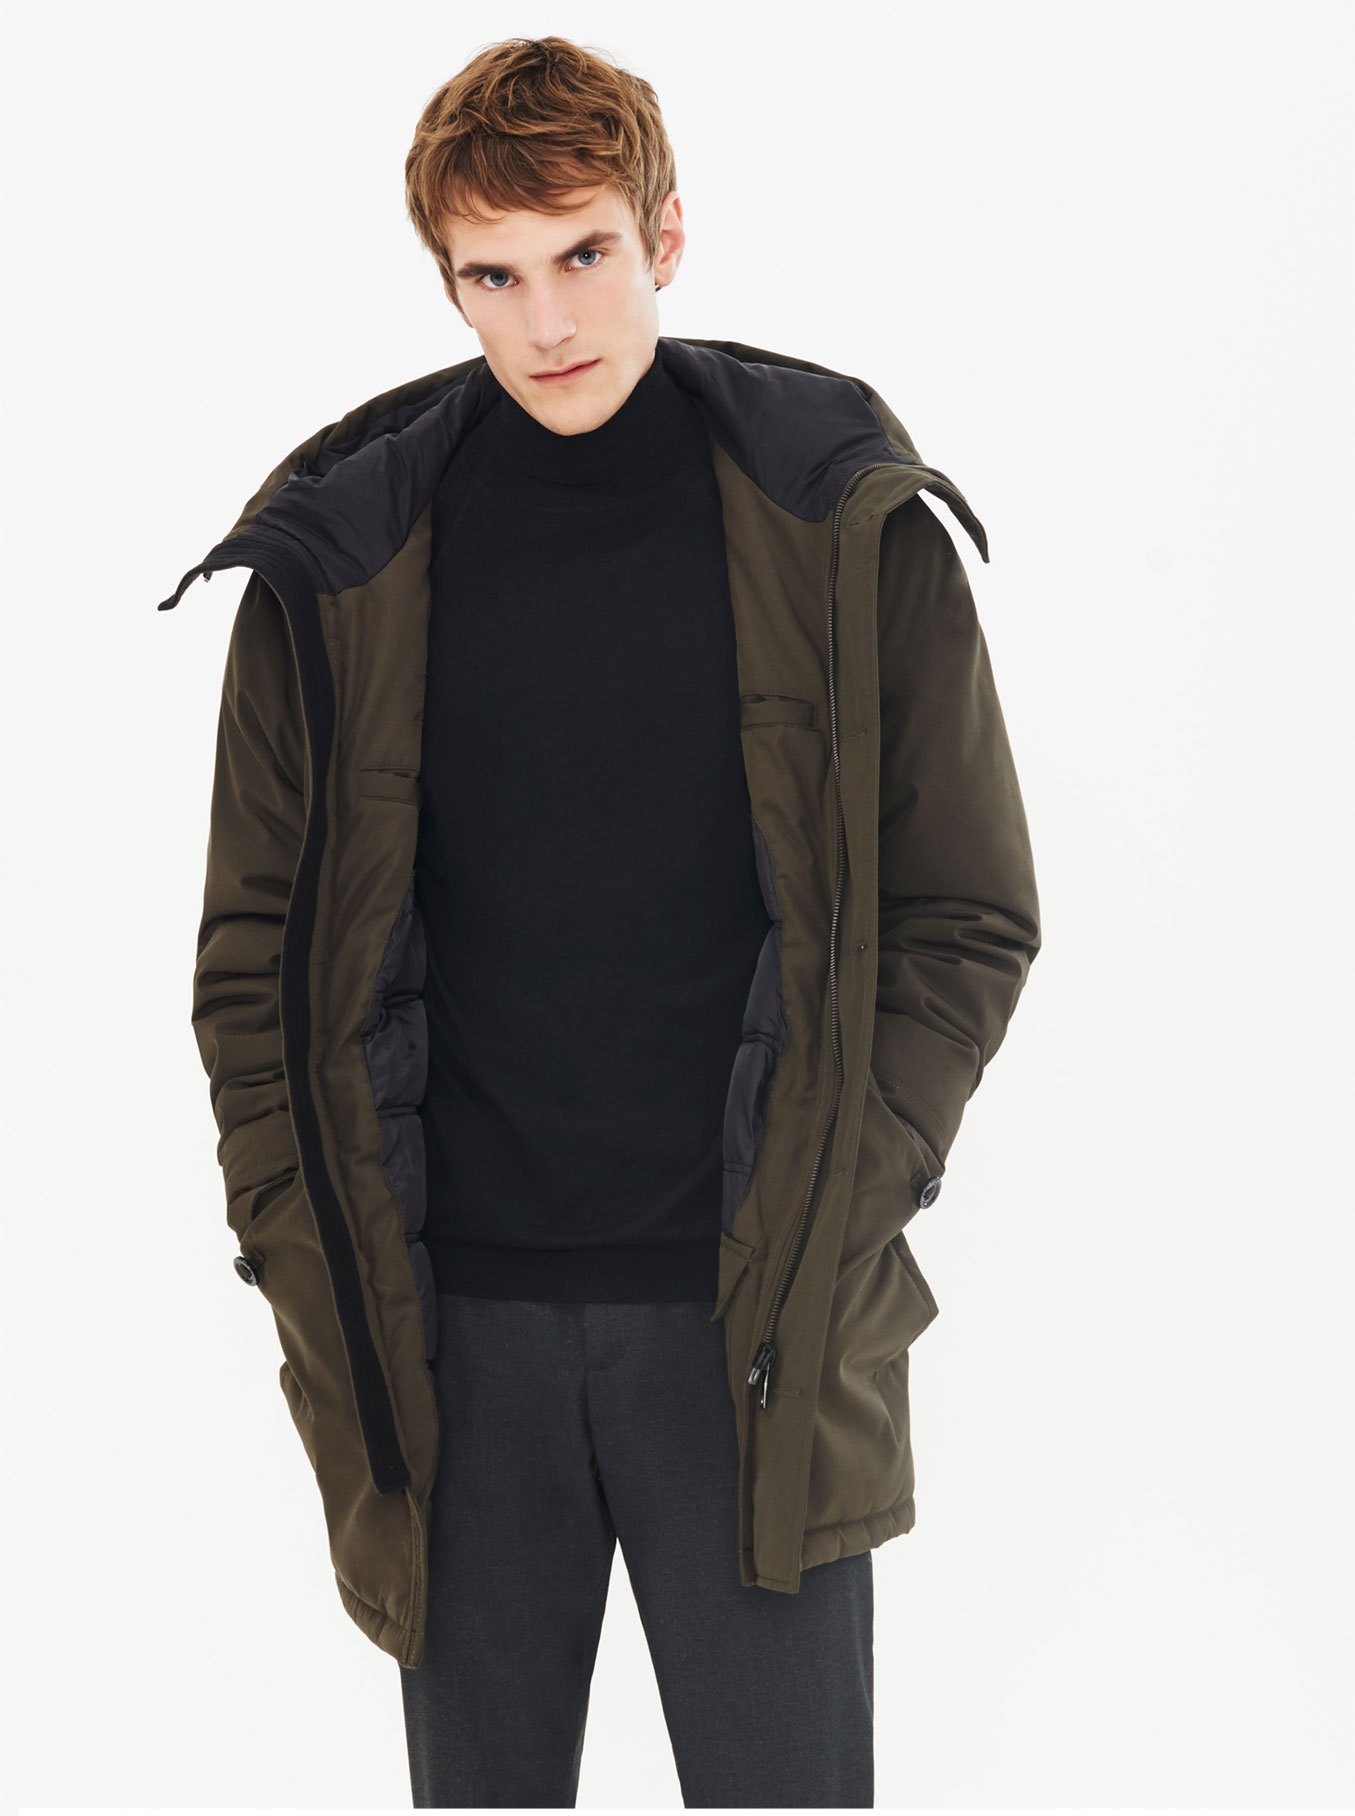 Zara Men 2015 Winter Coat 004